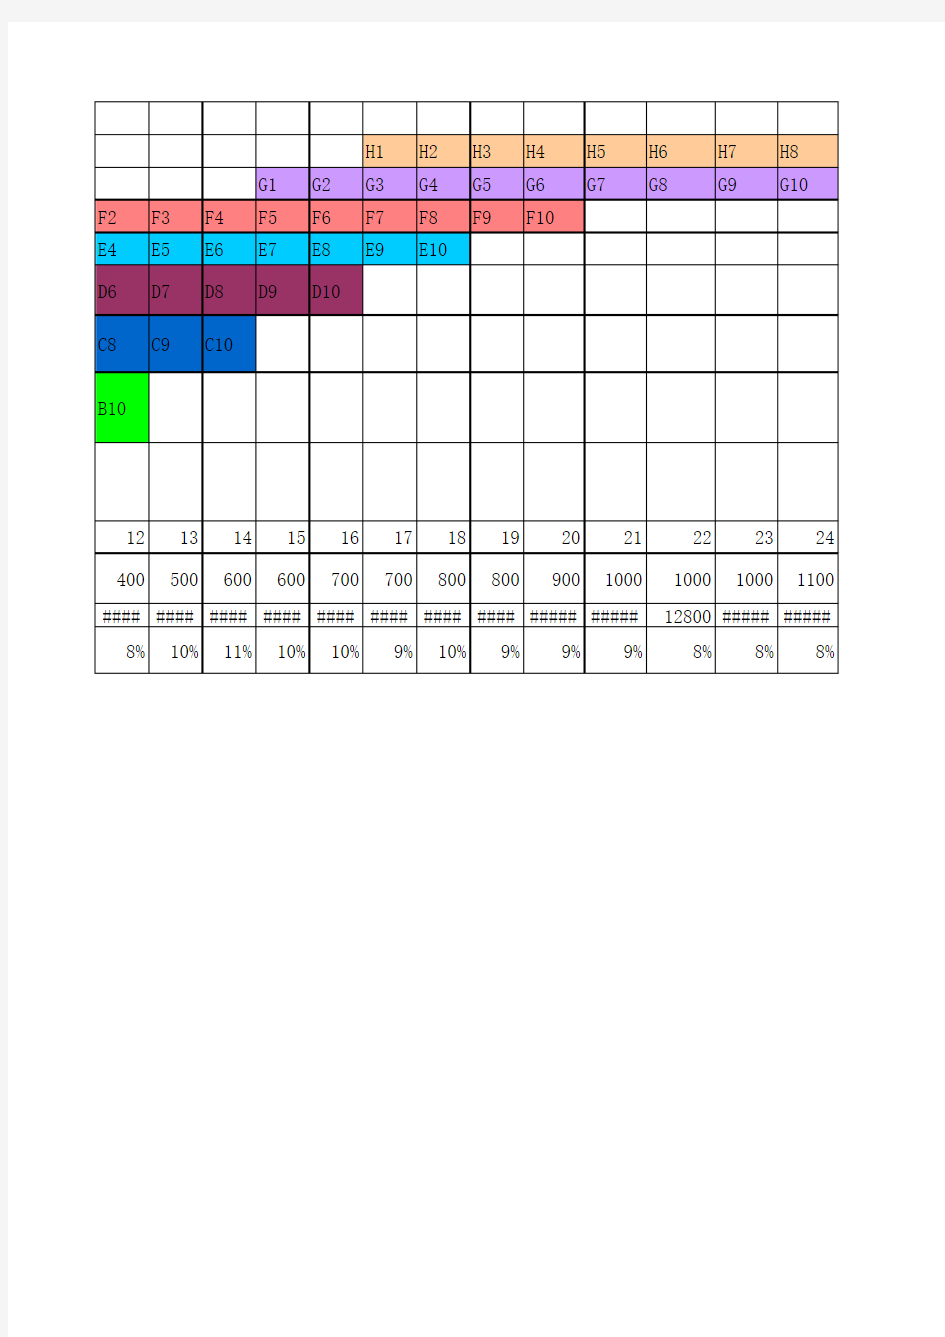 薪酬结构表20150819